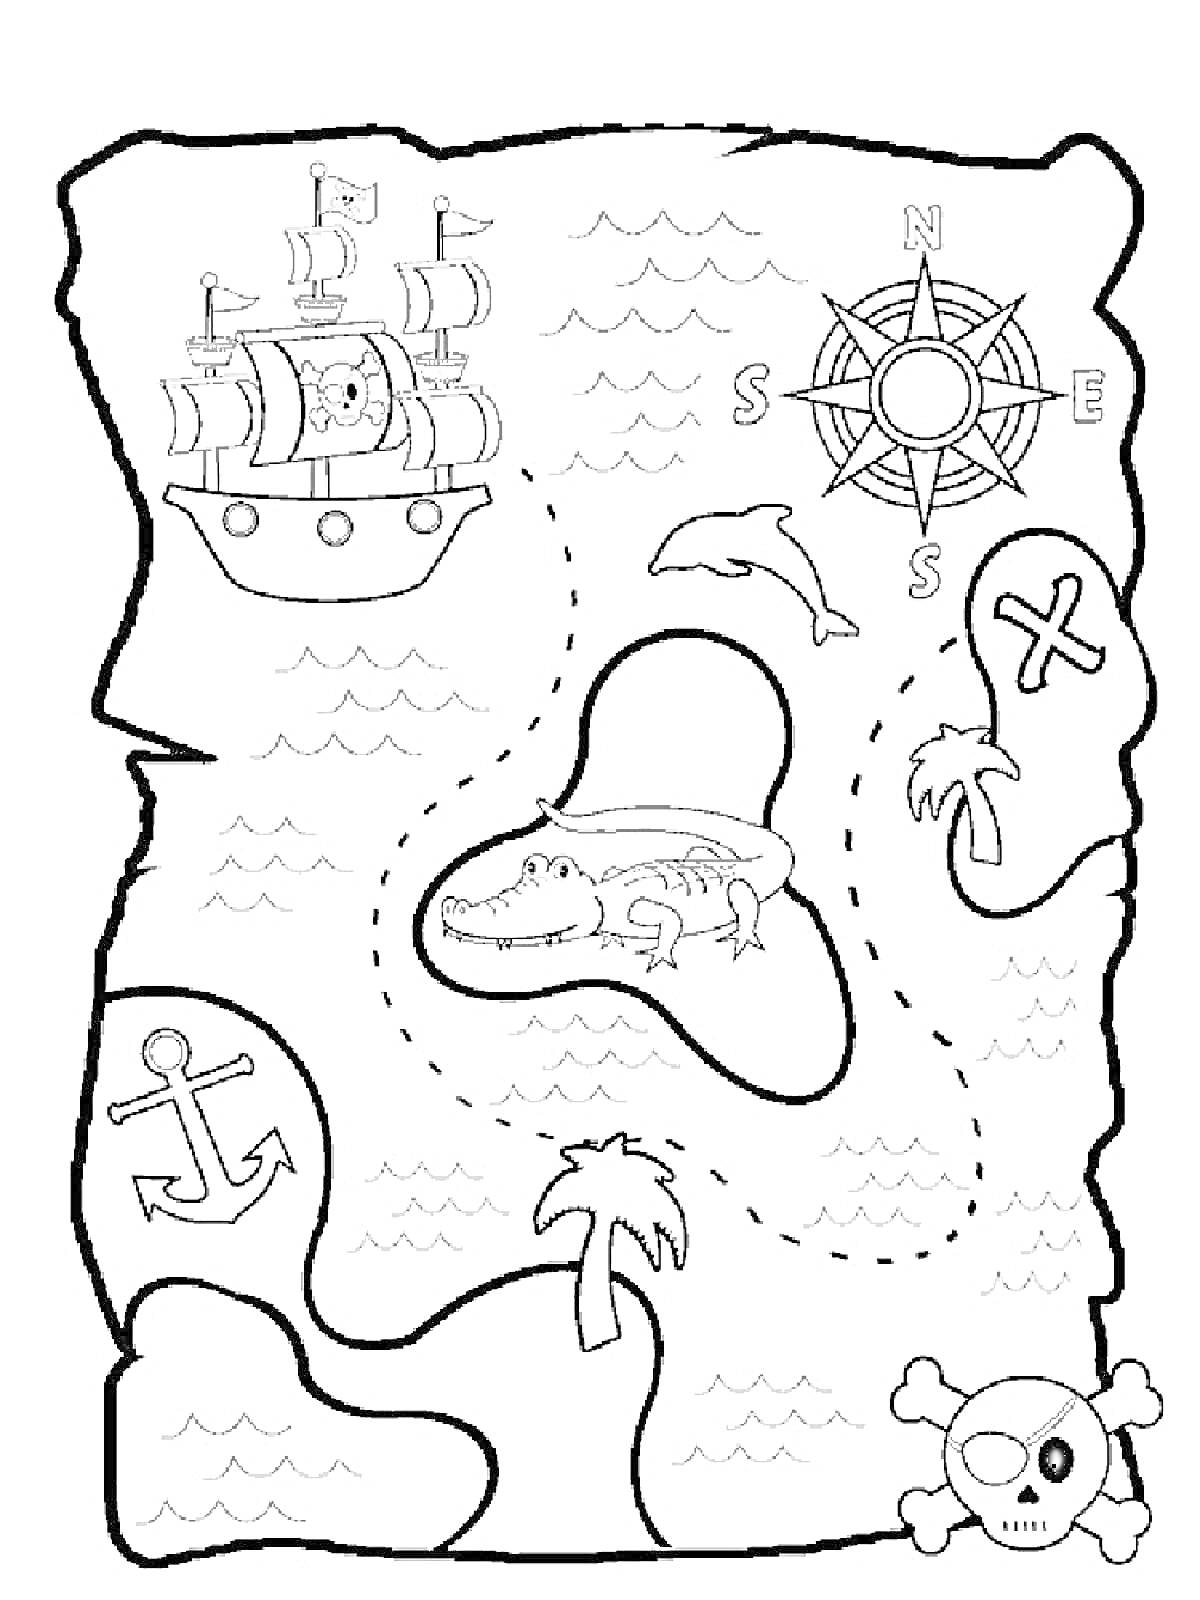 Карта сокровищ с кораблем, компасом, дельфином, островом с аллигатором, крестом, черепом и костями, якорем, пальмами и волнами